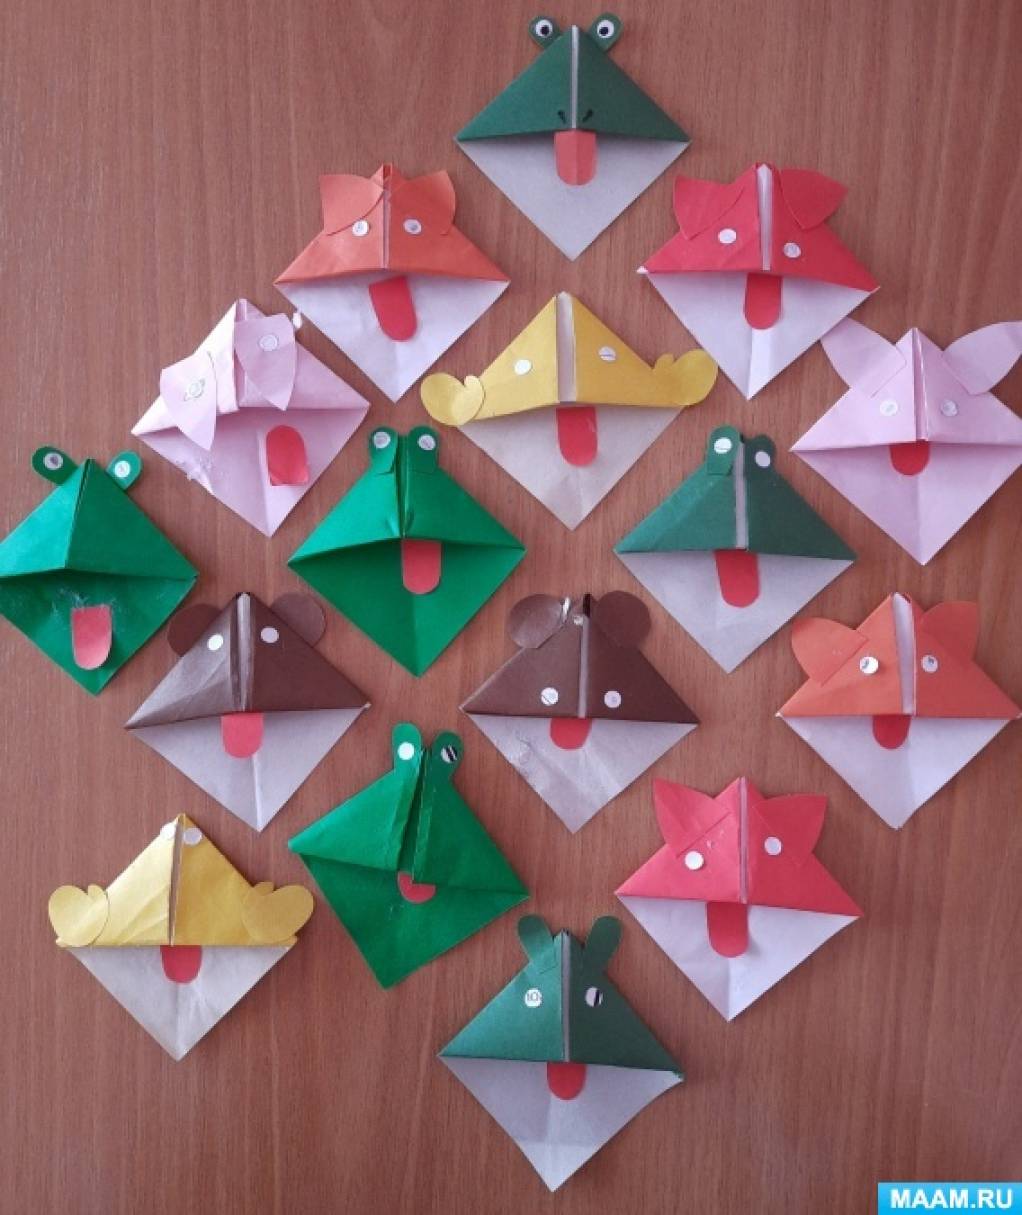 Конспекты оригами подготовительная группа. Оригами в подготовительной группе. Оригамт встаршей группе. Оригами в старшей группе детского сада. Оригами для подготовительной группы детского сада.